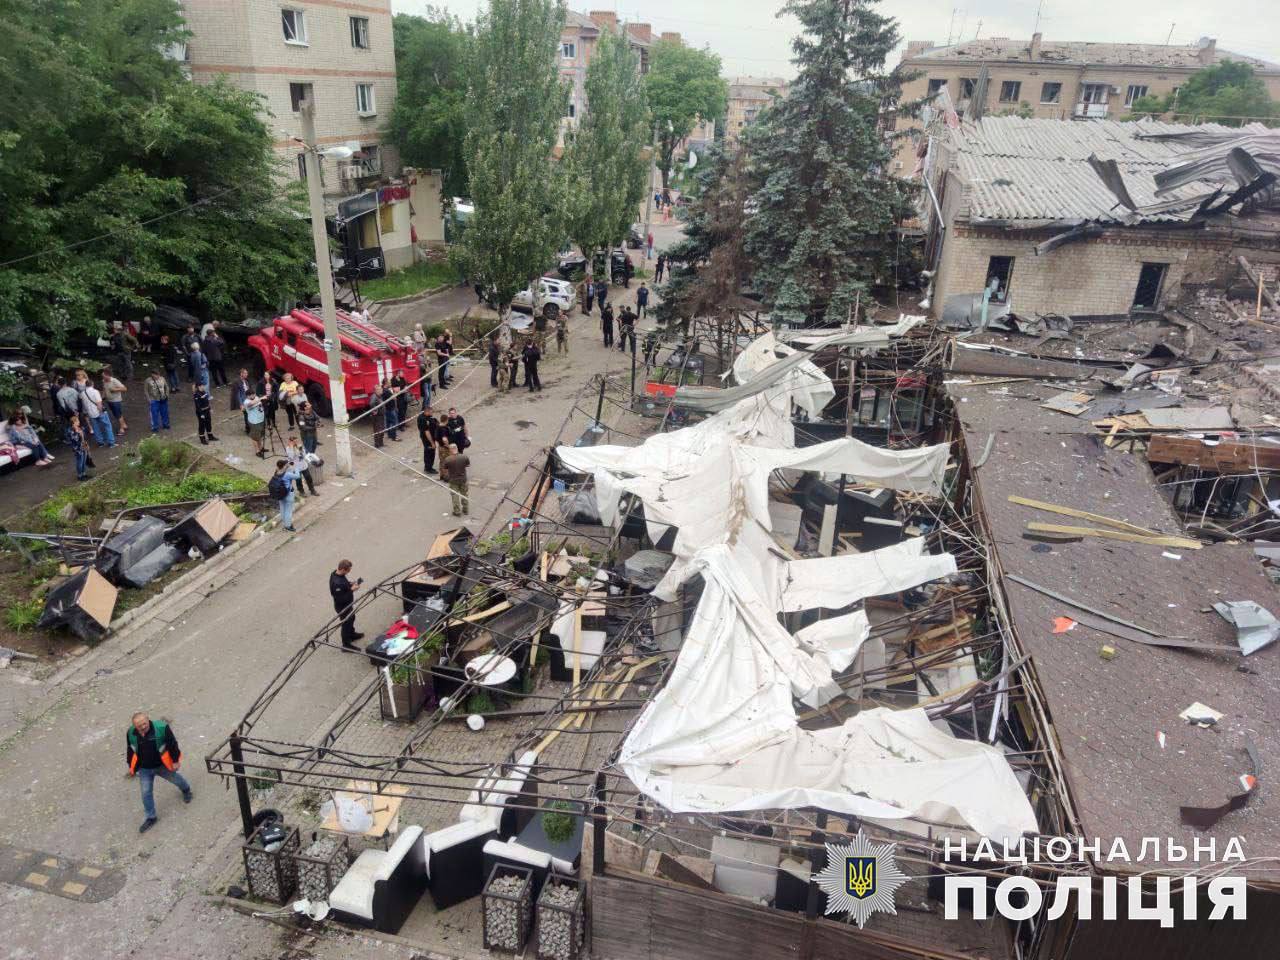 Bilanțul deceselor după atacul din Kramatorsk crește la 12! Operațiunea de căutare și salvare la fața locului a fost încheiată